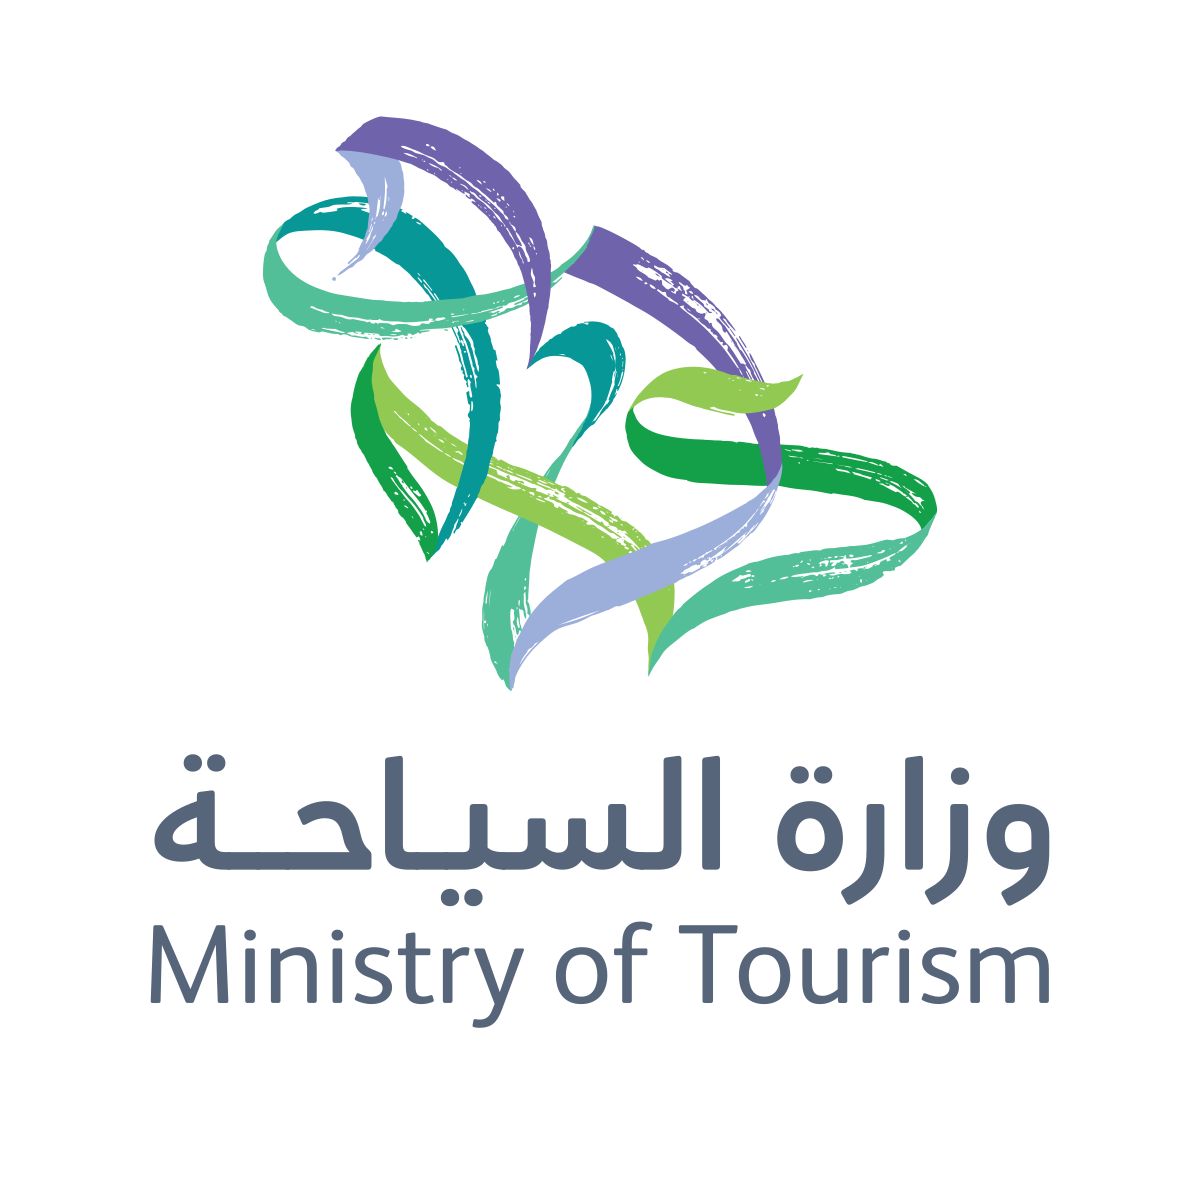 التسجيل في منصة التعليم السياحي الإلكتروني والبرامج الموفرة hcdp.mt.gov.sa